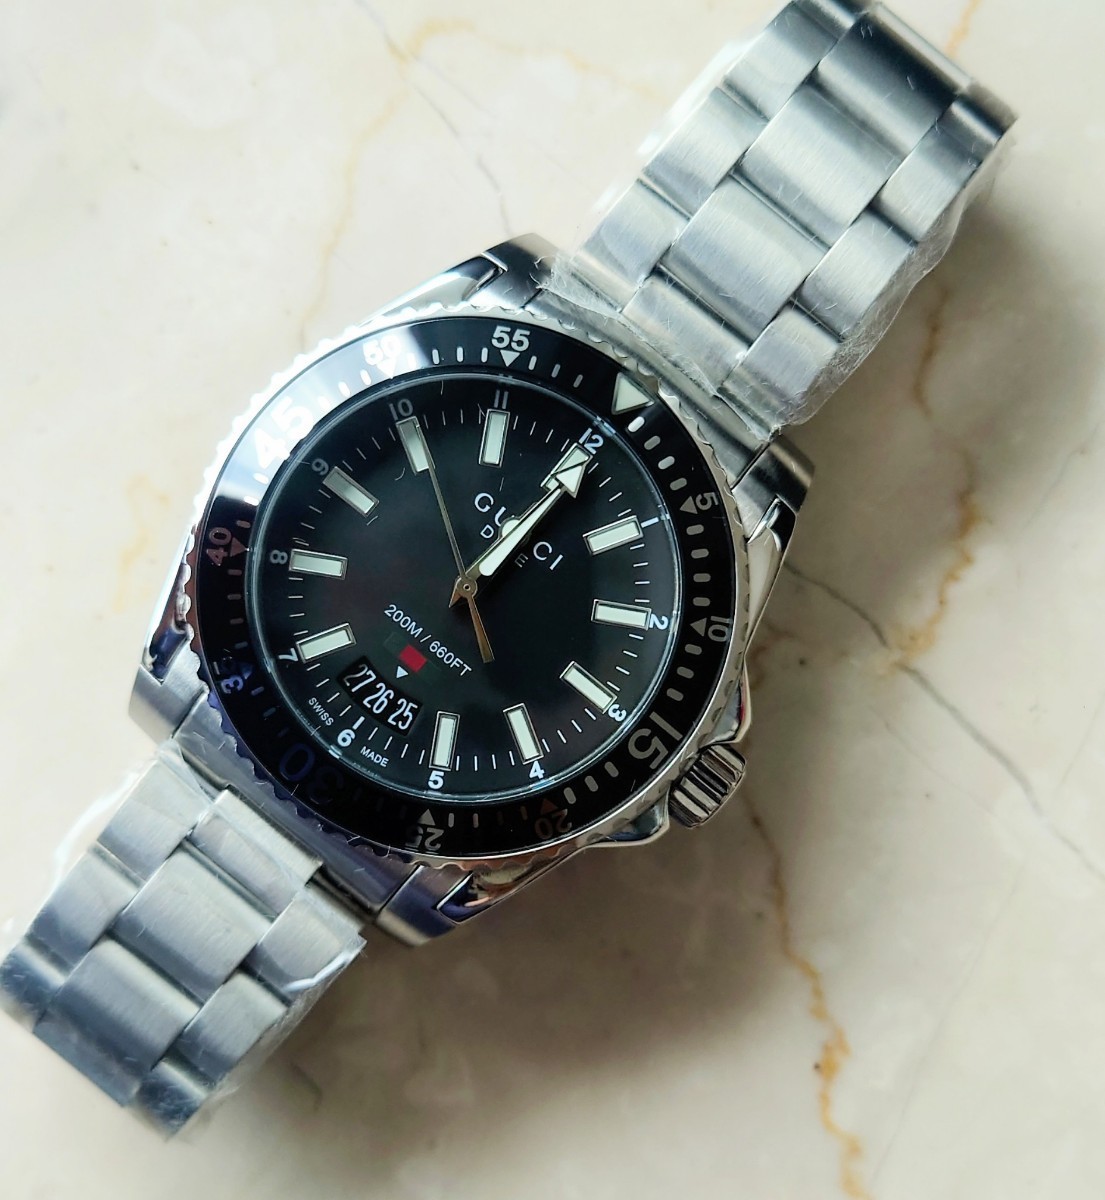 新品未使用 グッチ gucci ダイブ ブラック メンズ 腕時計 YA136301